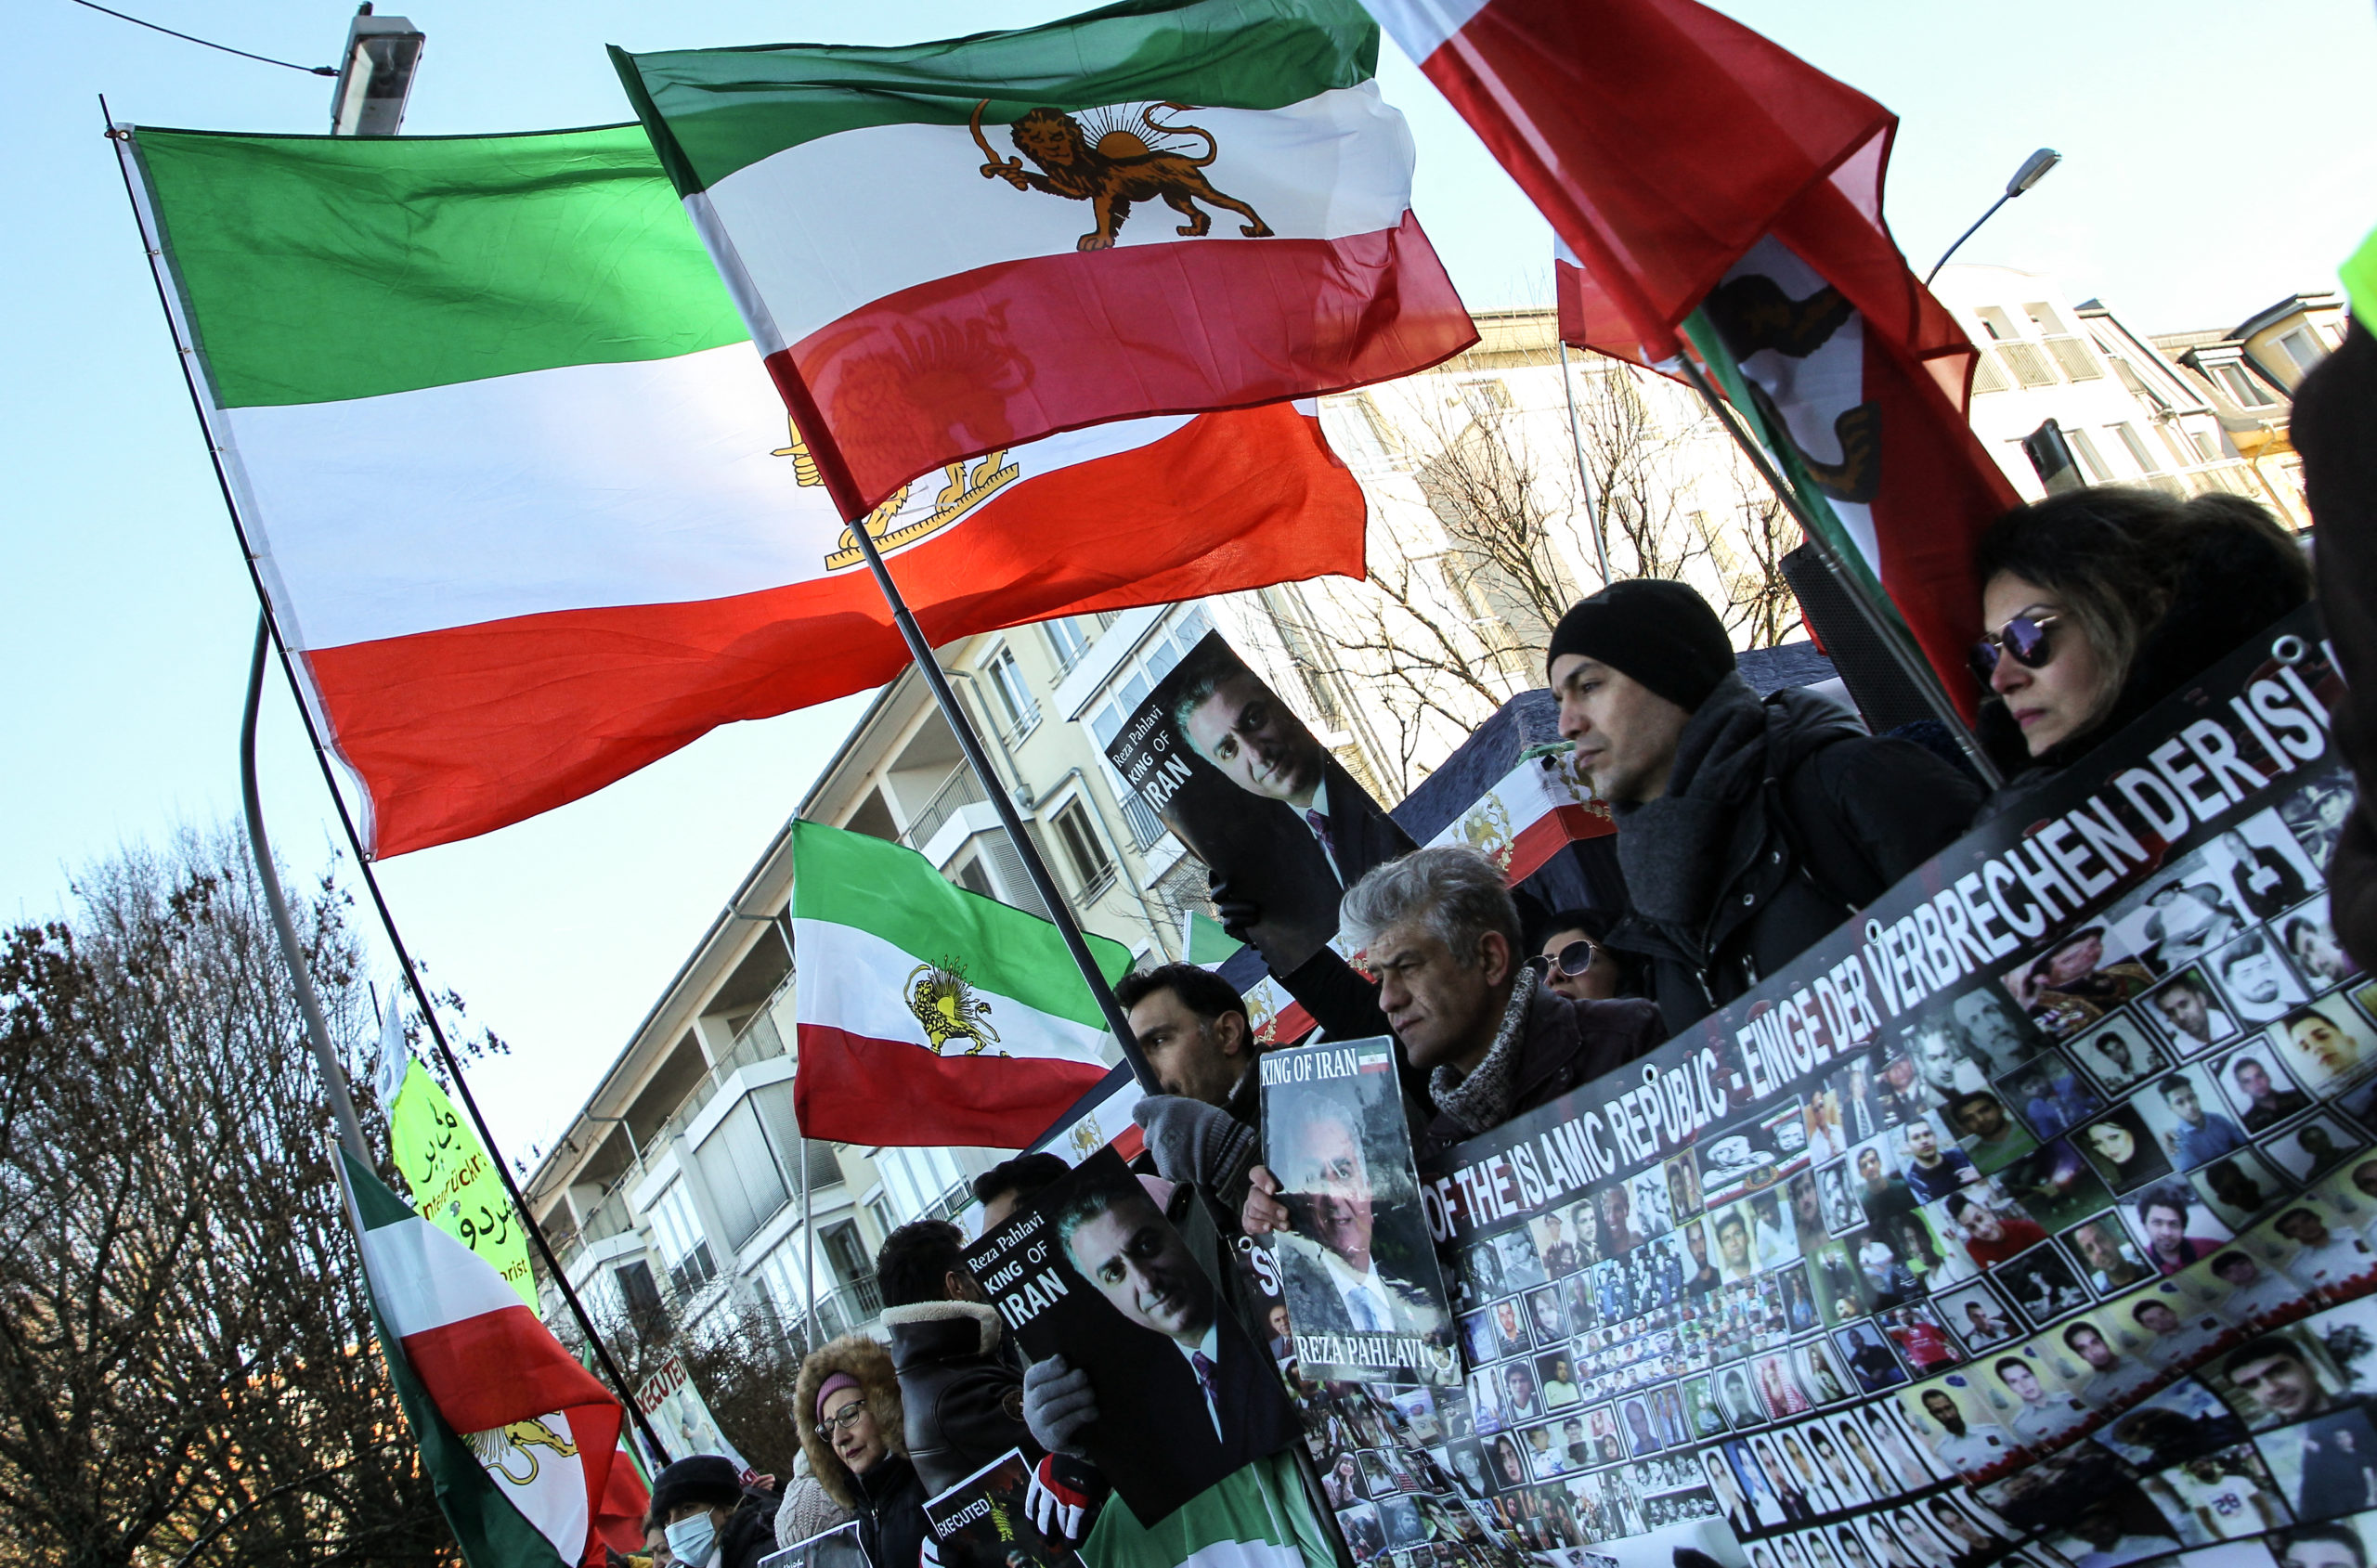 Ιράν: Την απελευθέρωση κρατουμένων διαδηλωτών ζητεί εξέχων σουνίτης ιερωμένος – Νέος γύρος διαδηλώσεων στη Ζαχεντάν